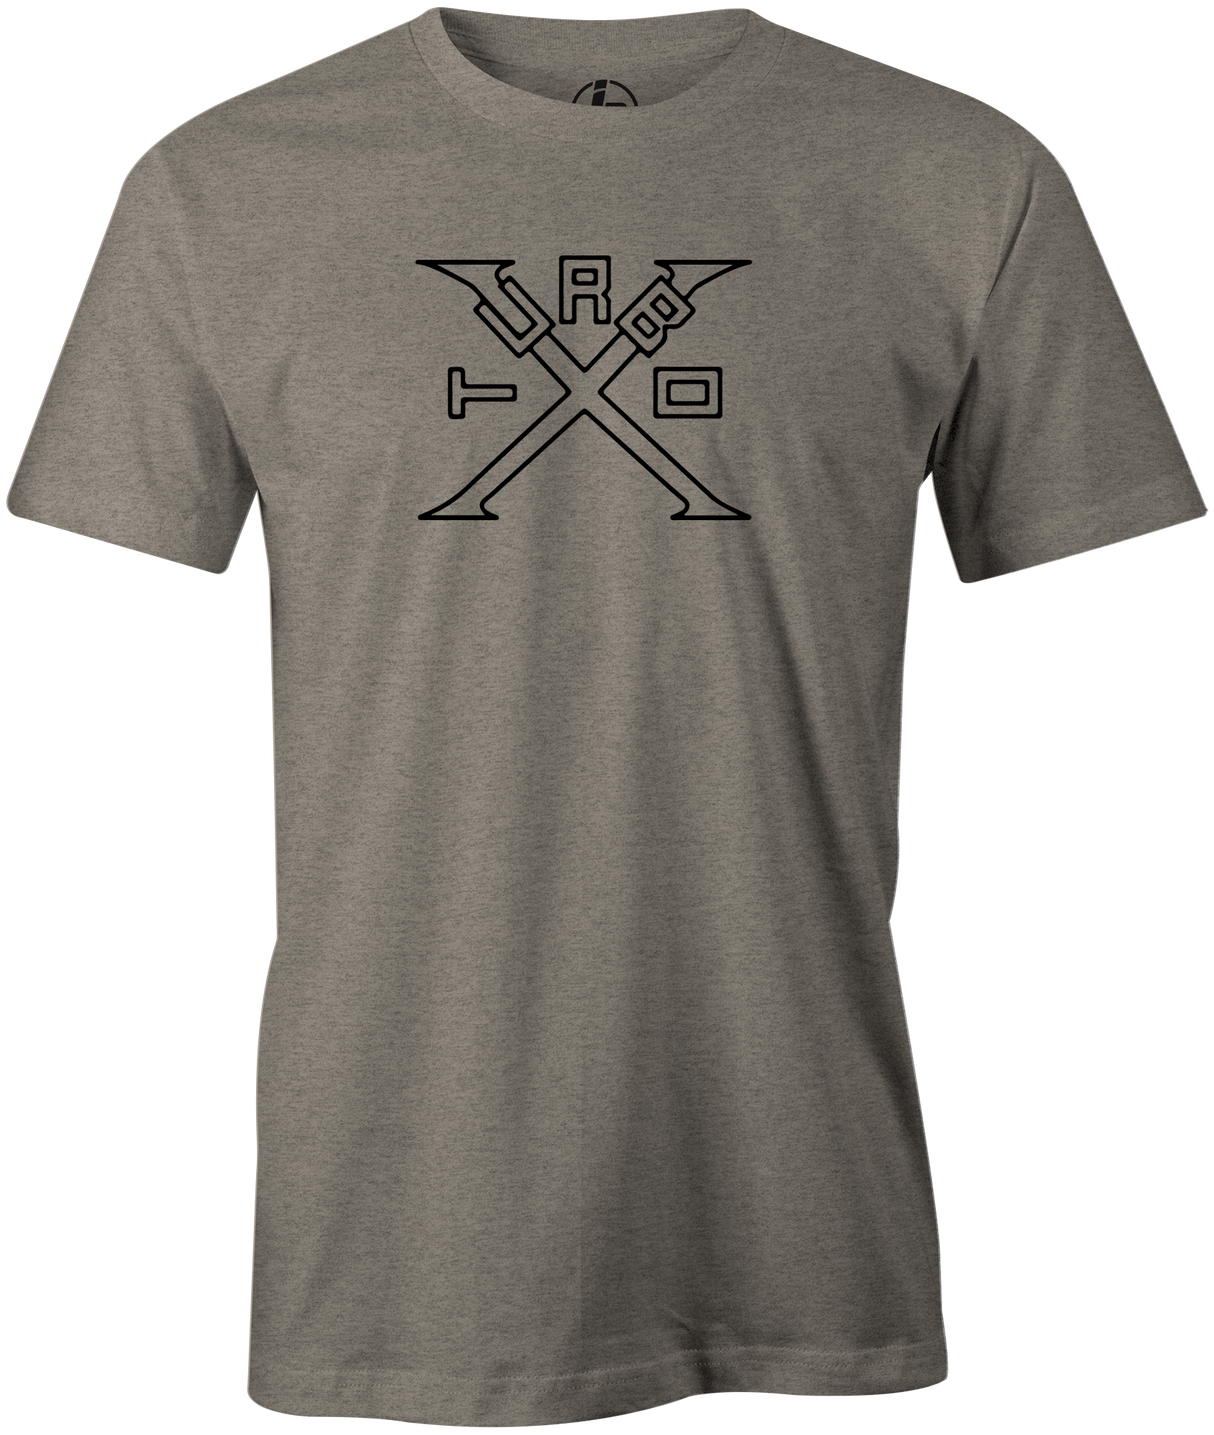 Turbo X Men's T-Shirt, Grey, bowling, bowling ball, ebonite, ebonite bowling, classic, vintage, retro, throwback, original, old school, tee, tee shirt, tee-shirt, tshirt.